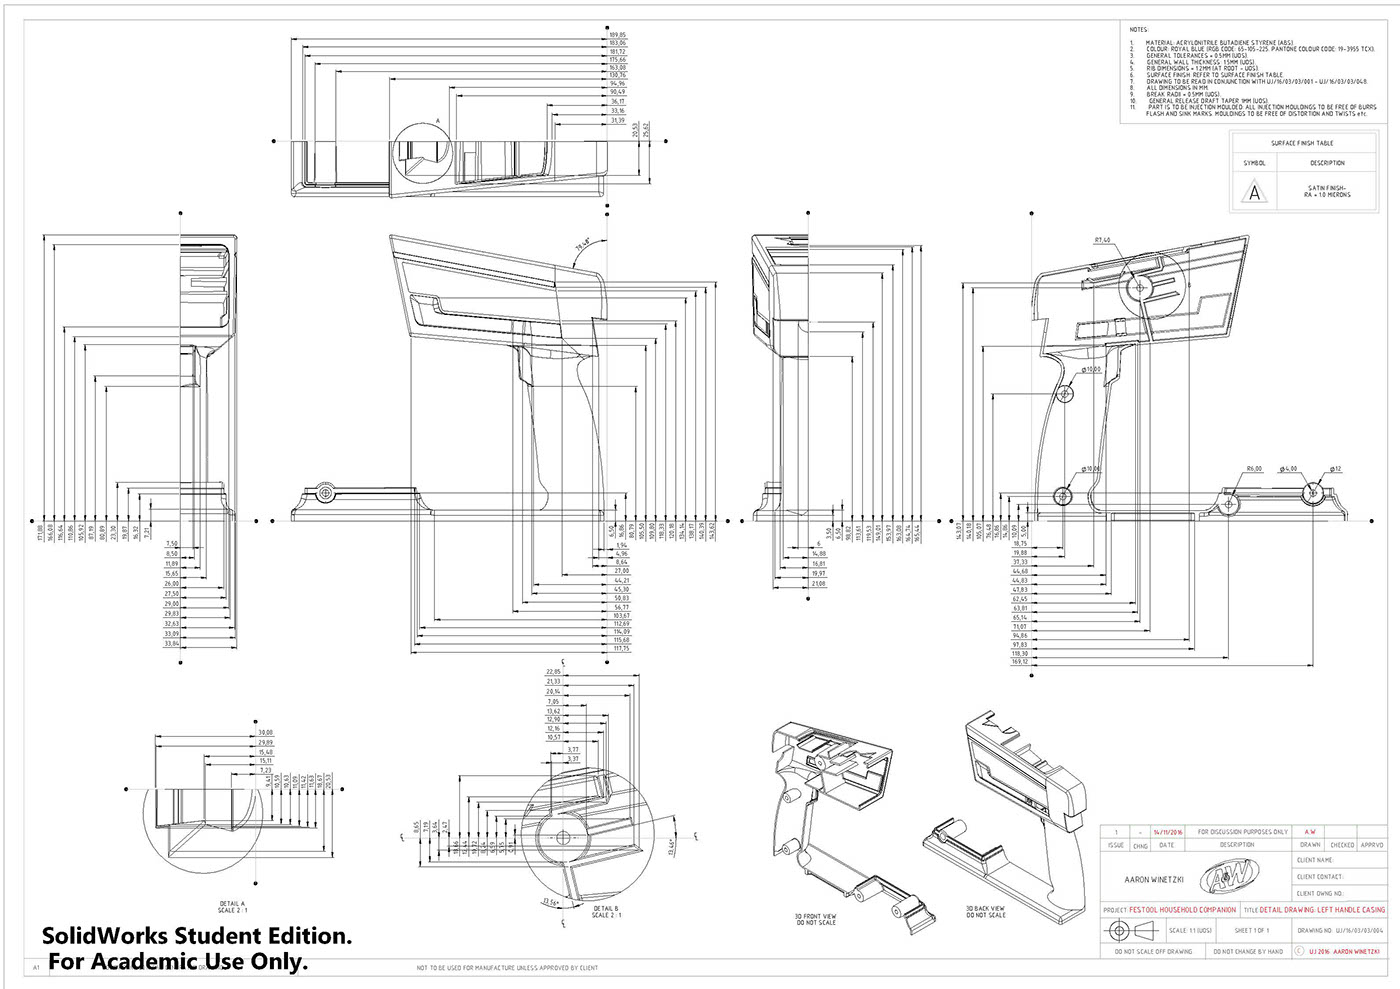 cordless drill Festool industrialdesign